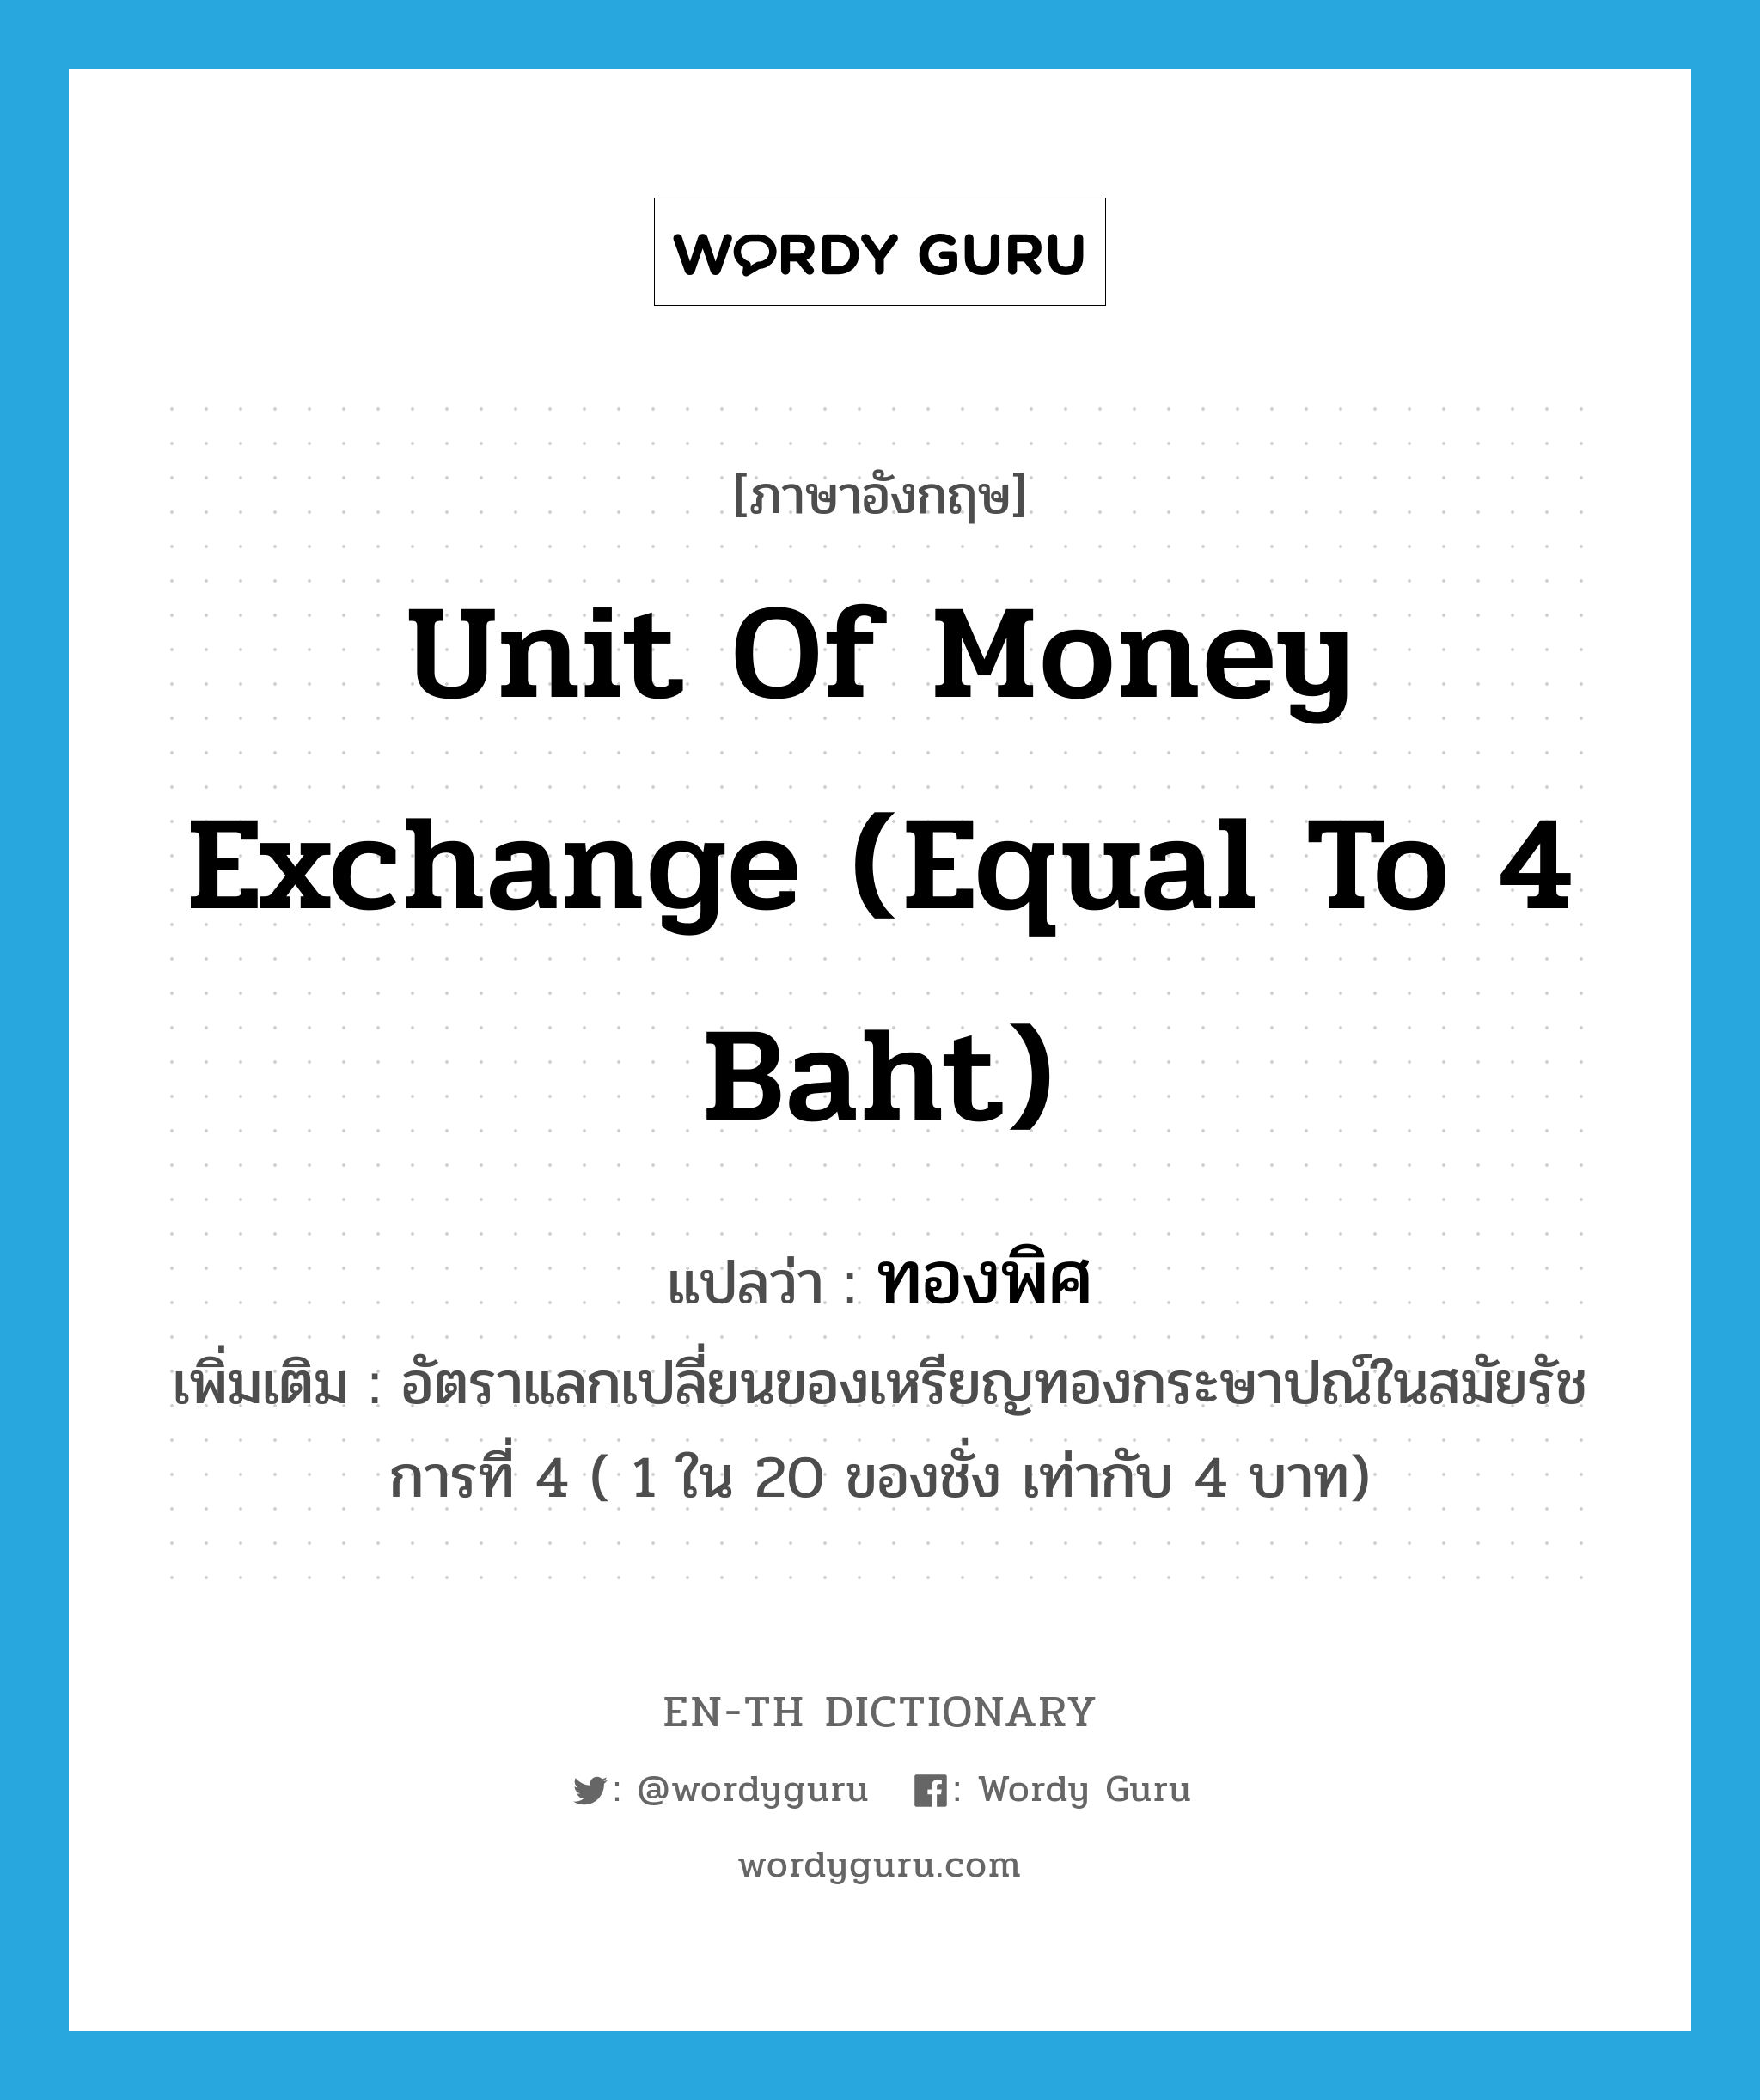 ทองพิศ ภาษาอังกฤษ?, คำศัพท์ภาษาอังกฤษ ทองพิศ แปลว่า unit of money exchange (equal to 4 baht) ประเภท CLAS เพิ่มเติม อัตราแลกเปลี่ยนของเหรียญทองกระษาปณ์ในสมัยรัชการที่ 4 ( 1 ใน 20 ของชั่ง เท่ากับ 4 บาท) หมวด CLAS